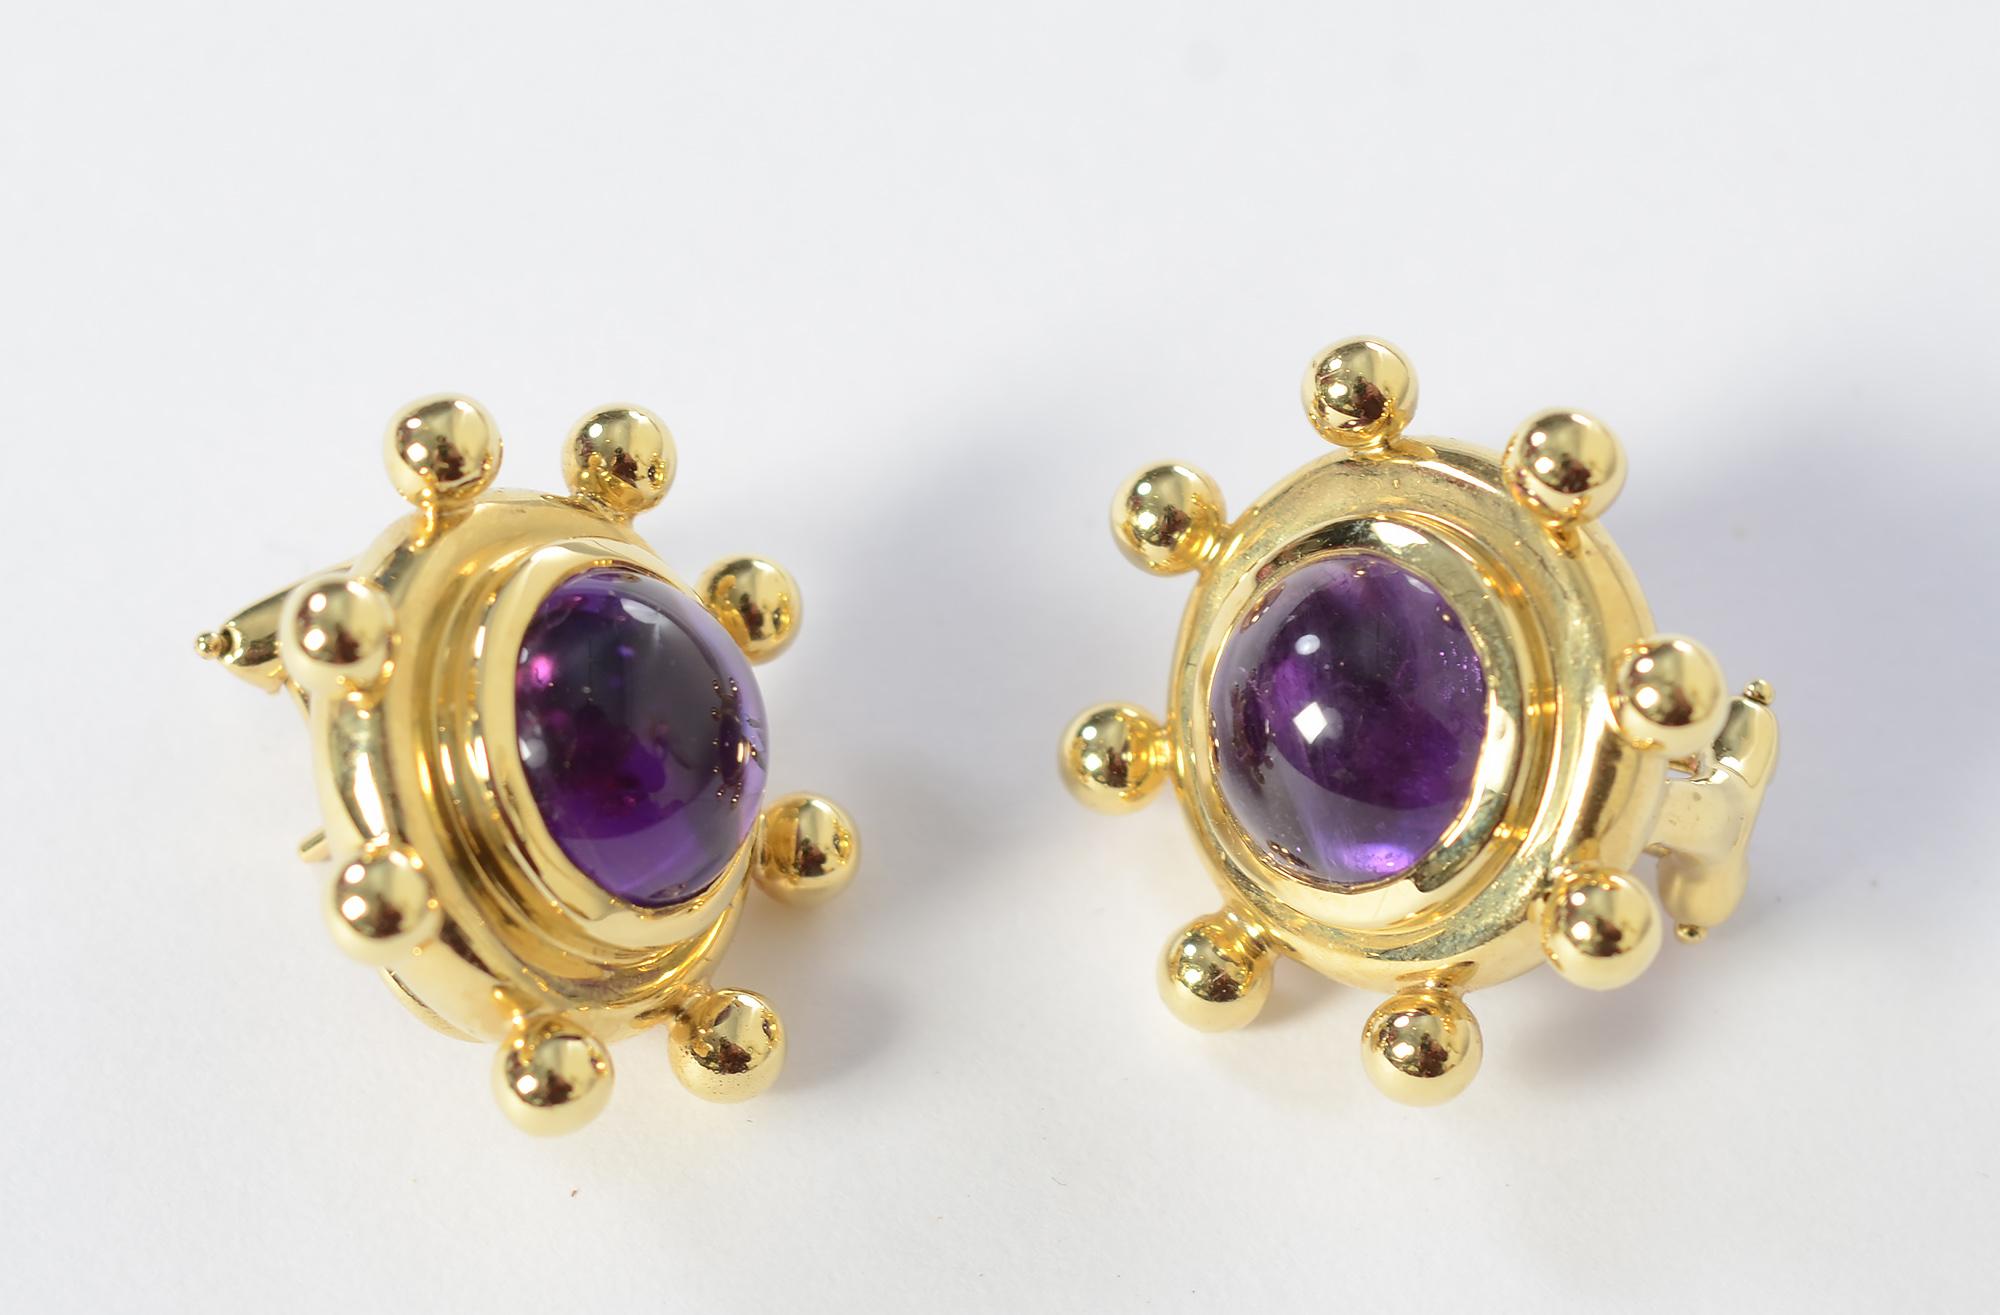 Schicke Ohrringe aus 18 Karat Gold und Amethyst von Paloma Picasso für Tiffany. Jeder hat einen 9,3 mm großen, farbenprächtigen Amethysten, der von acht Goldkugeln umgeben ist. Ohrringe sind 15/16